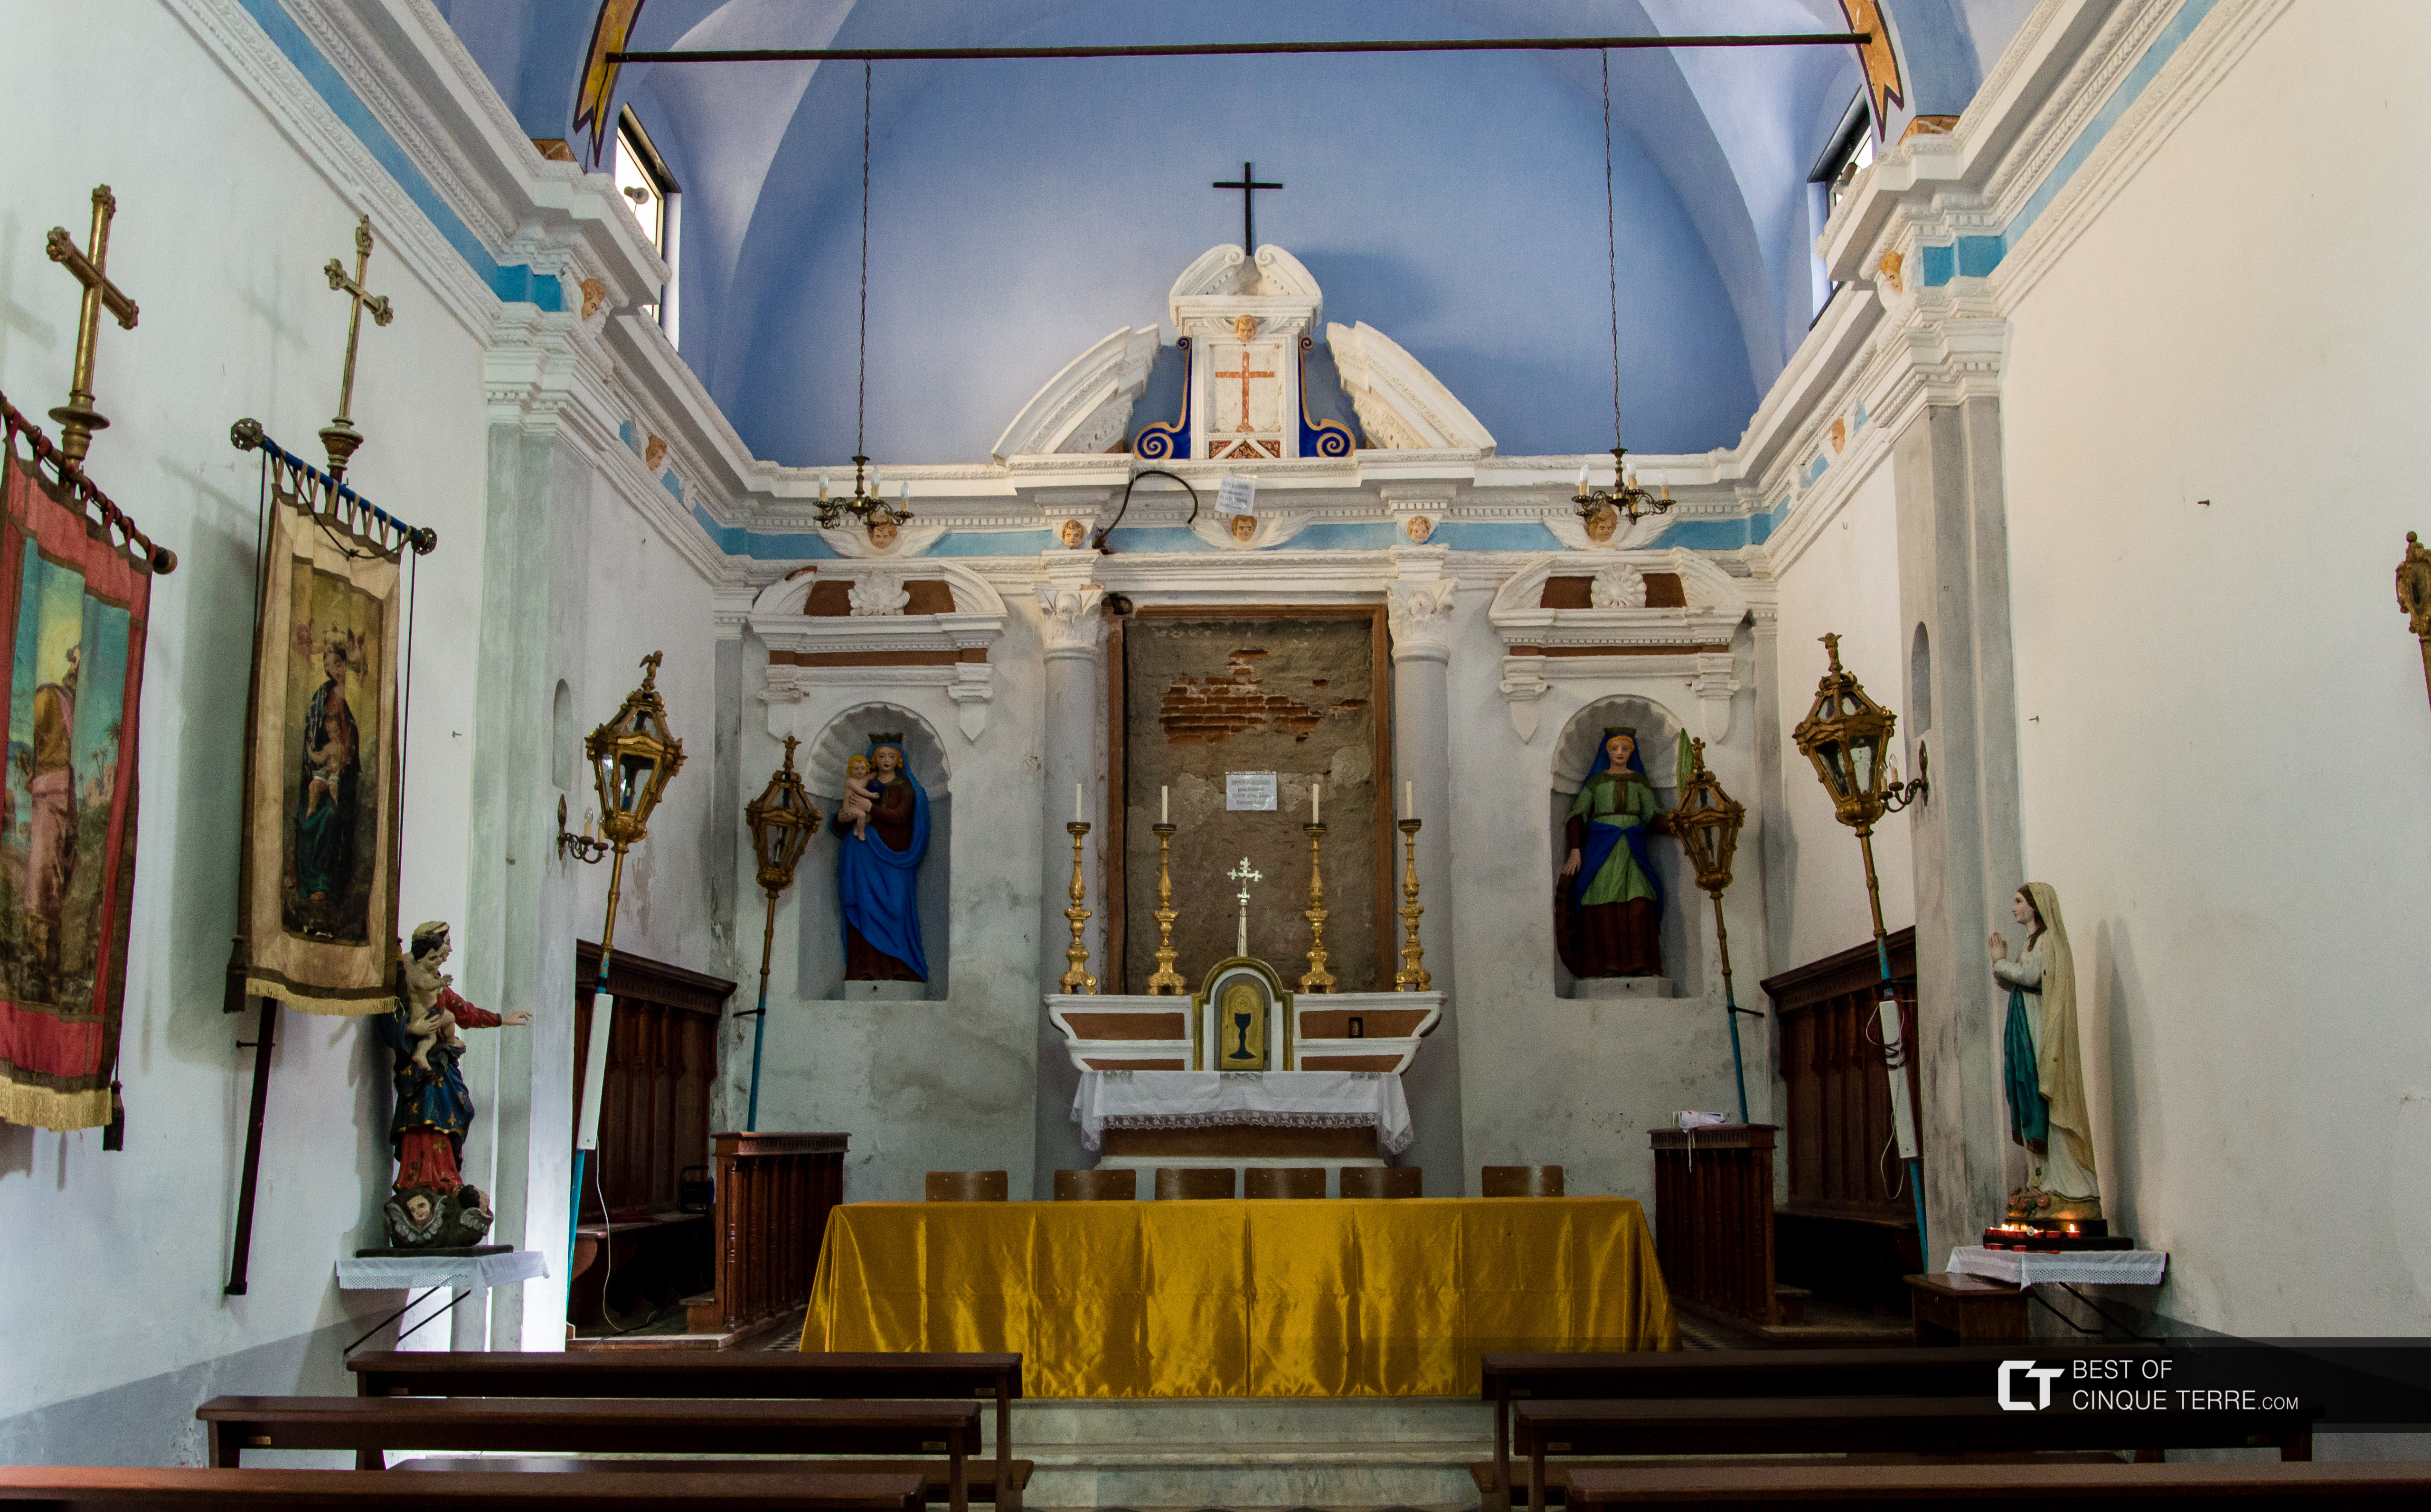 Dentro del oratorio de Santa Caterina, Corniglia, Cinque Terre, Italia